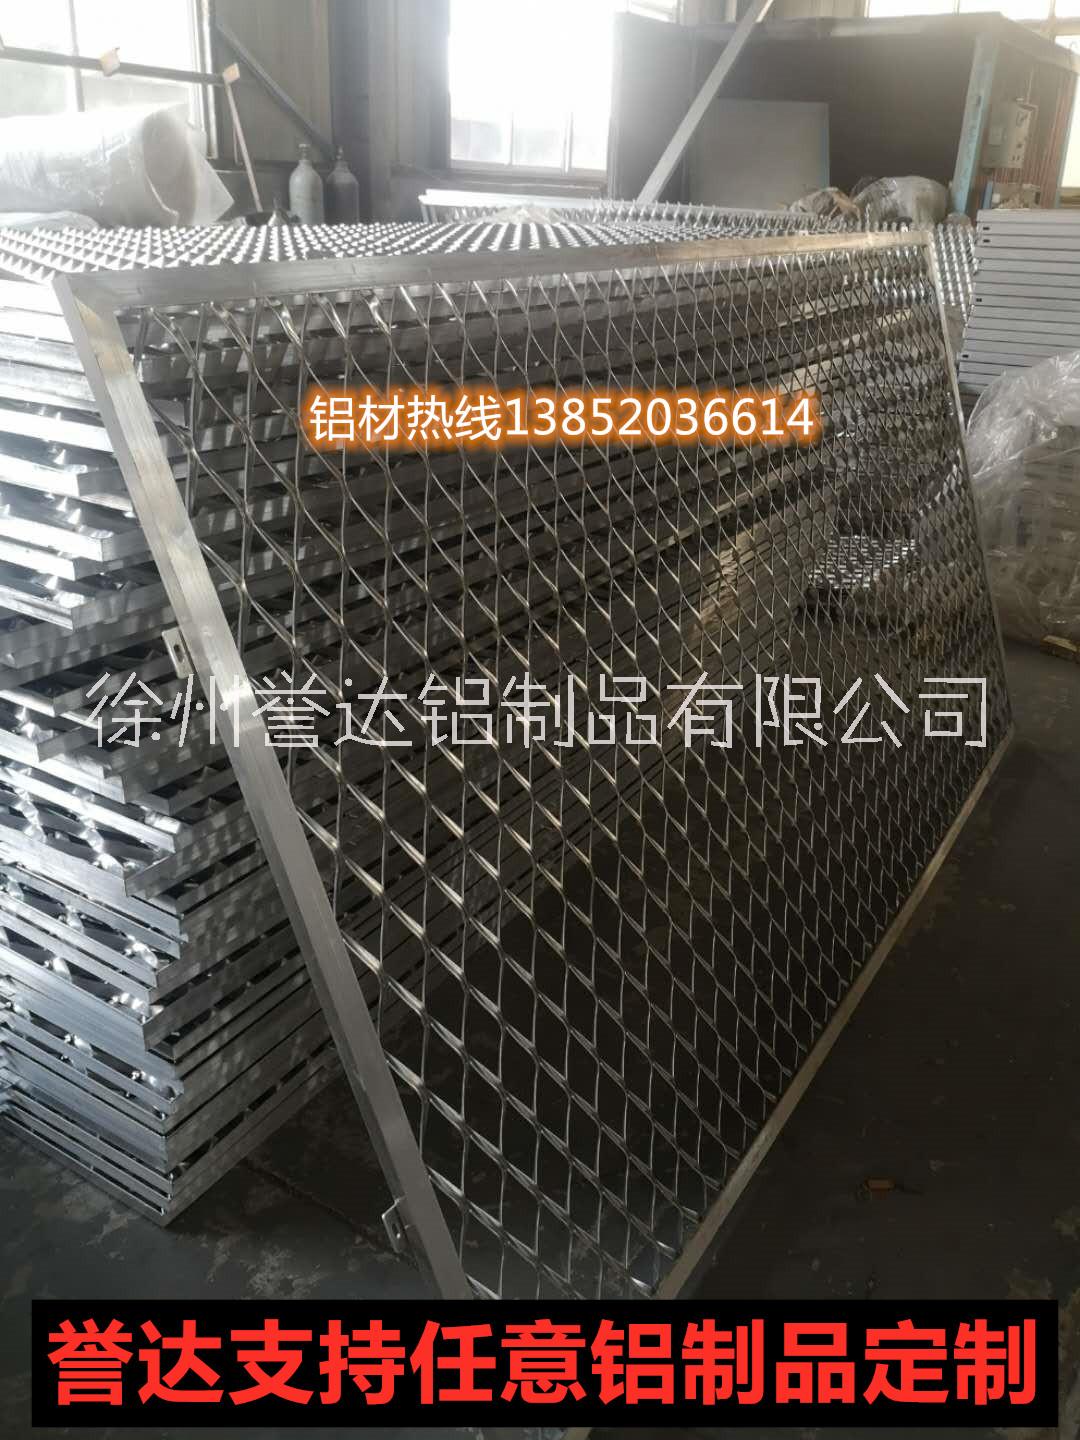 铝合金拉网板批发报价围墙铝拉网板供应商冲孔铝板厂家徐州誉达铝制品有限公司